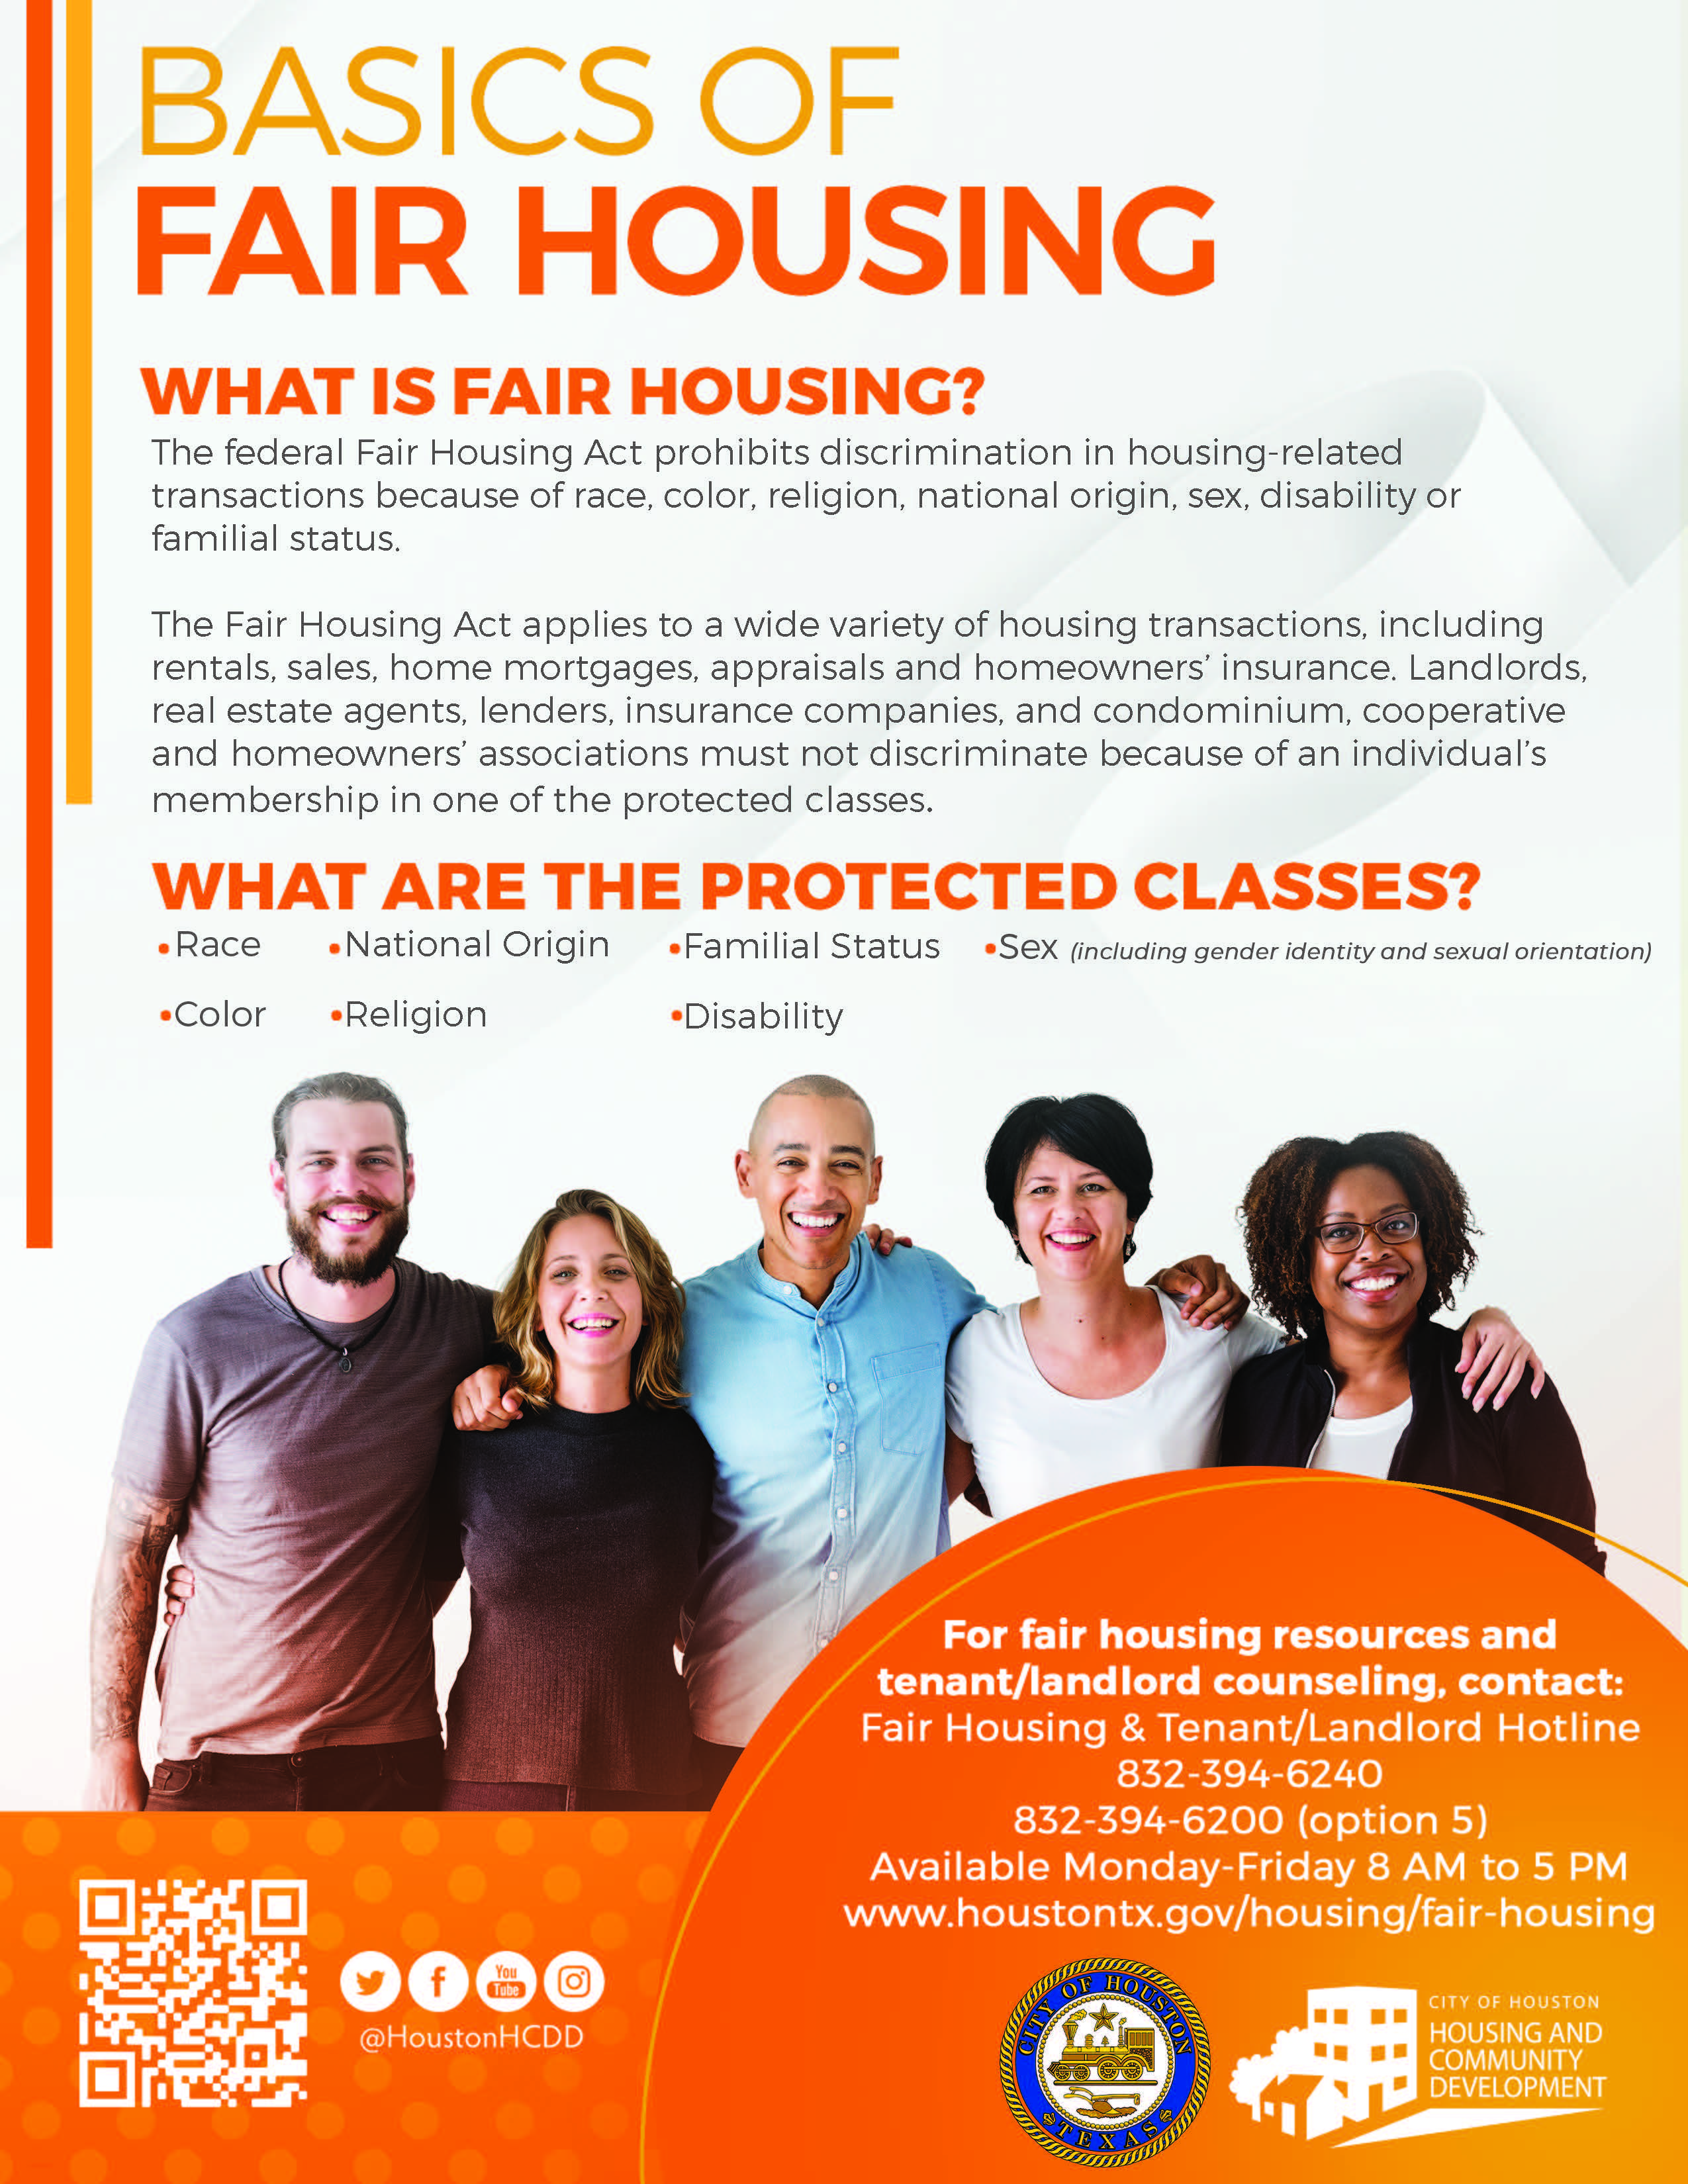 Basics of Fair Housing Poster